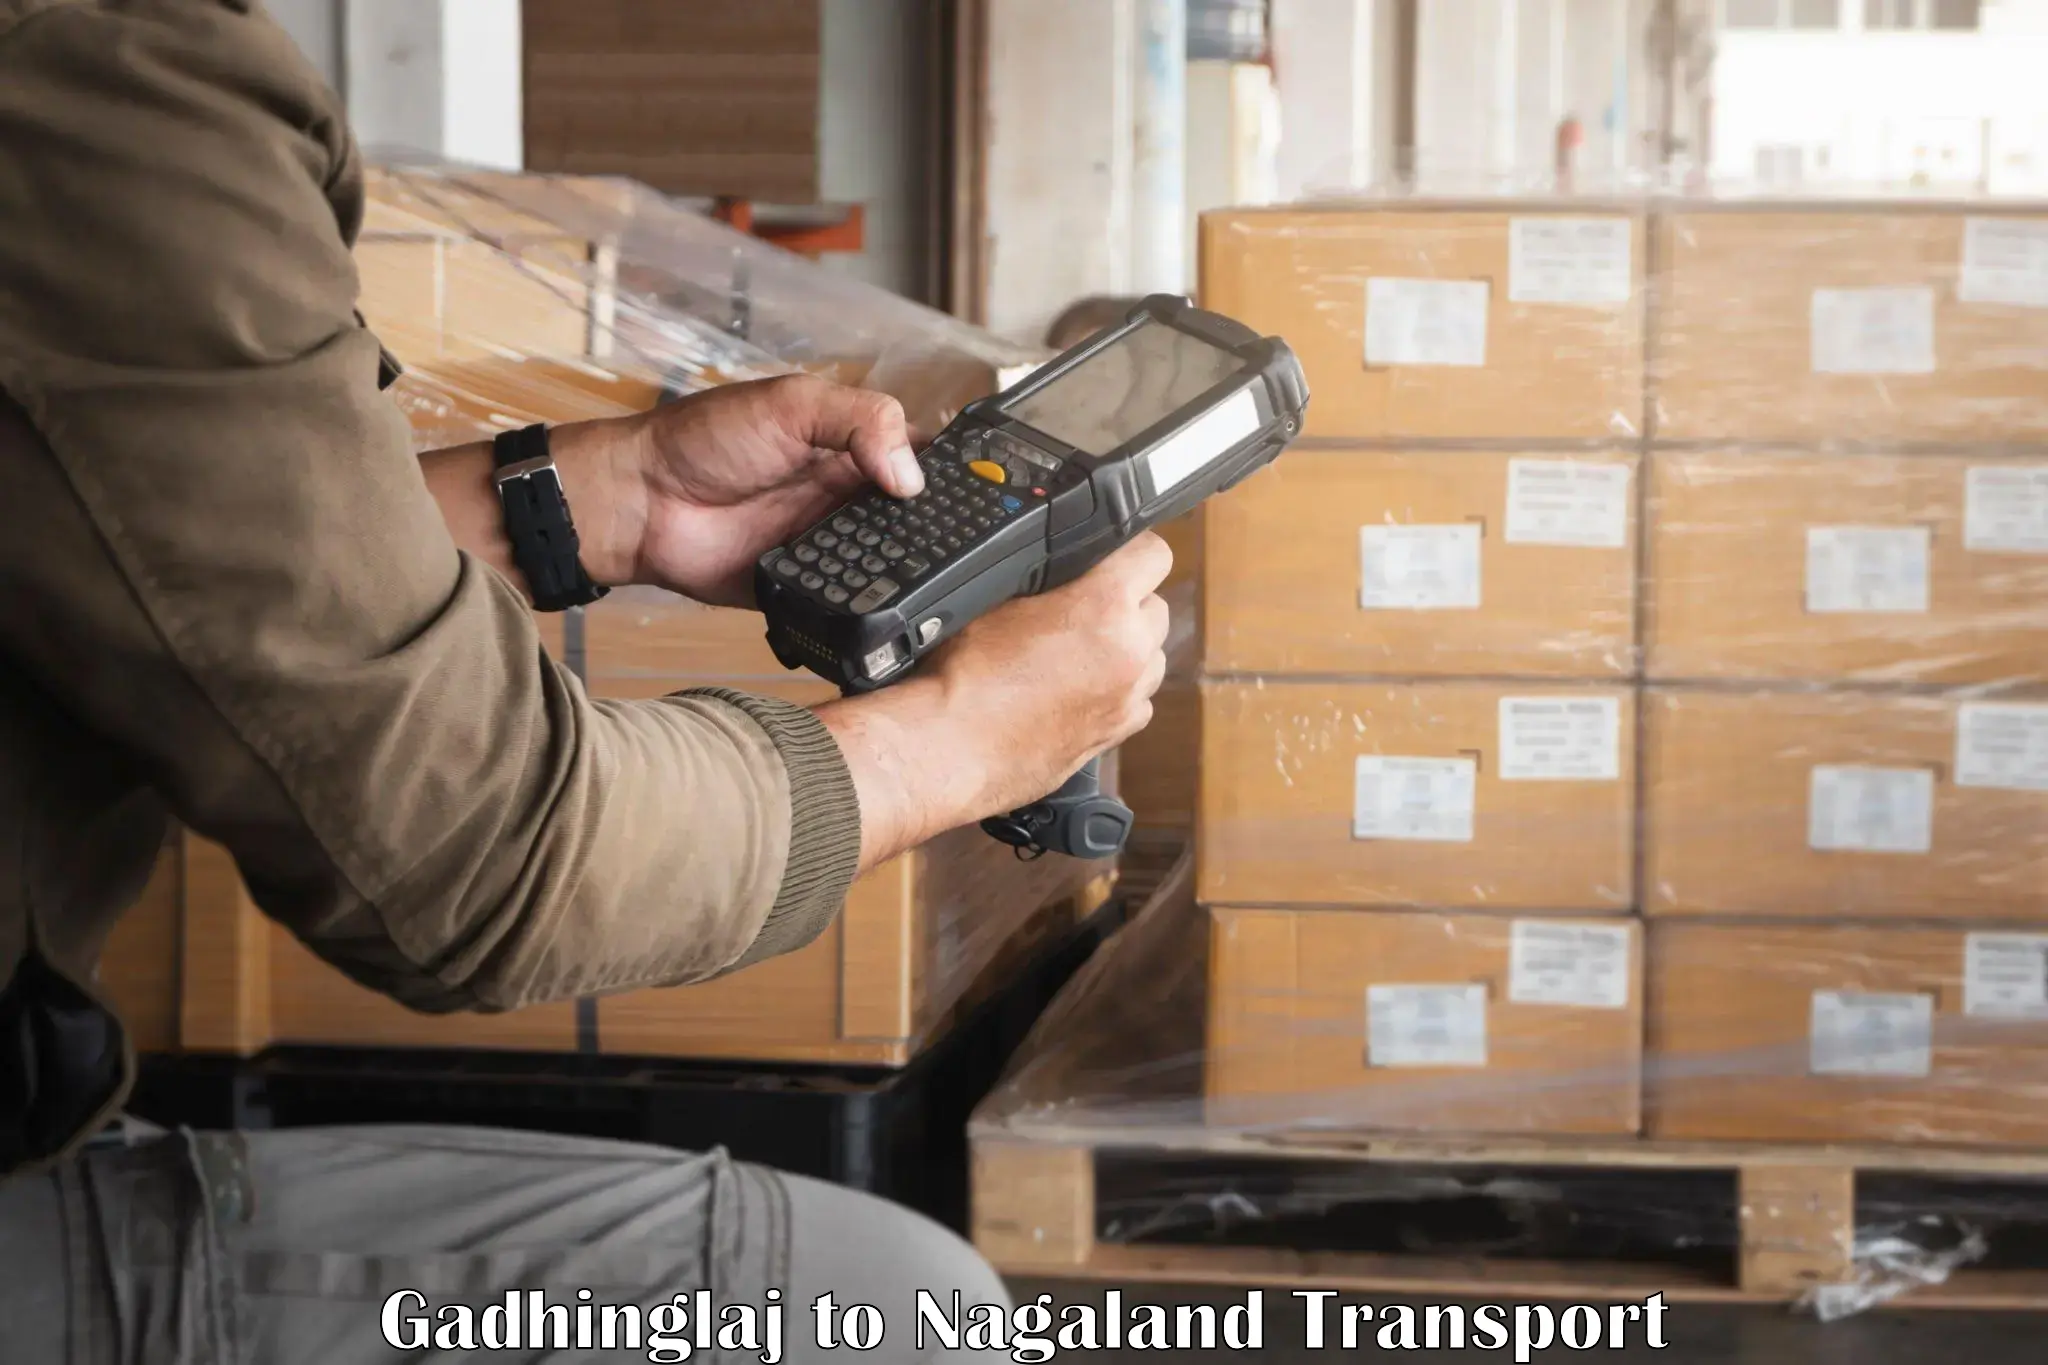 Cargo transport services Gadhinglaj to Chumukedima